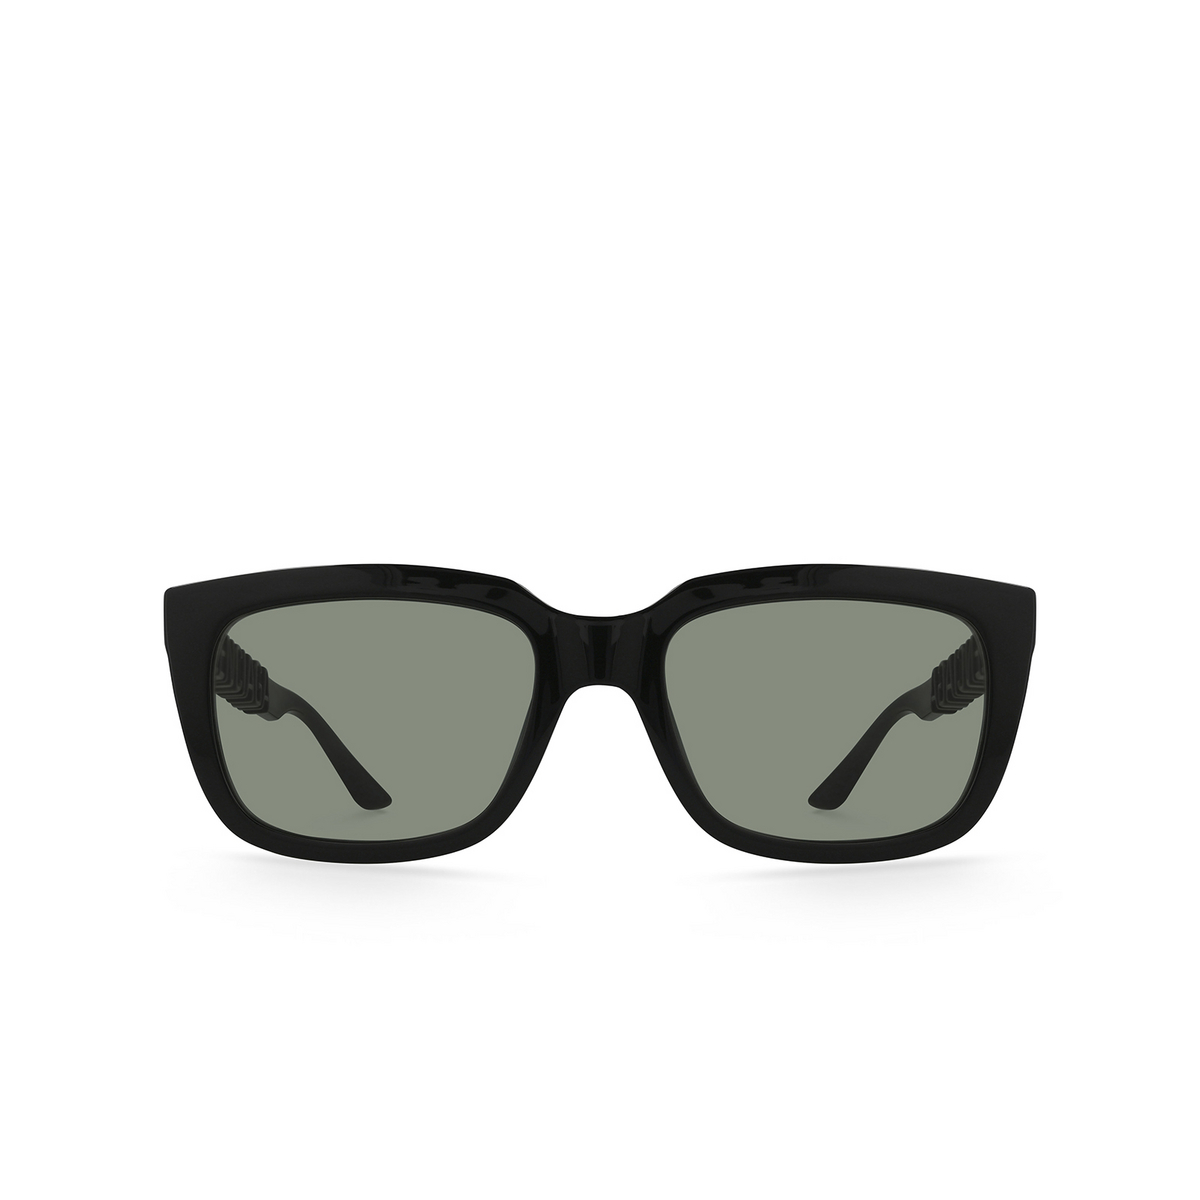 Balenciaga® Square Sunglasses: BB0108S color Black 001 - front view.